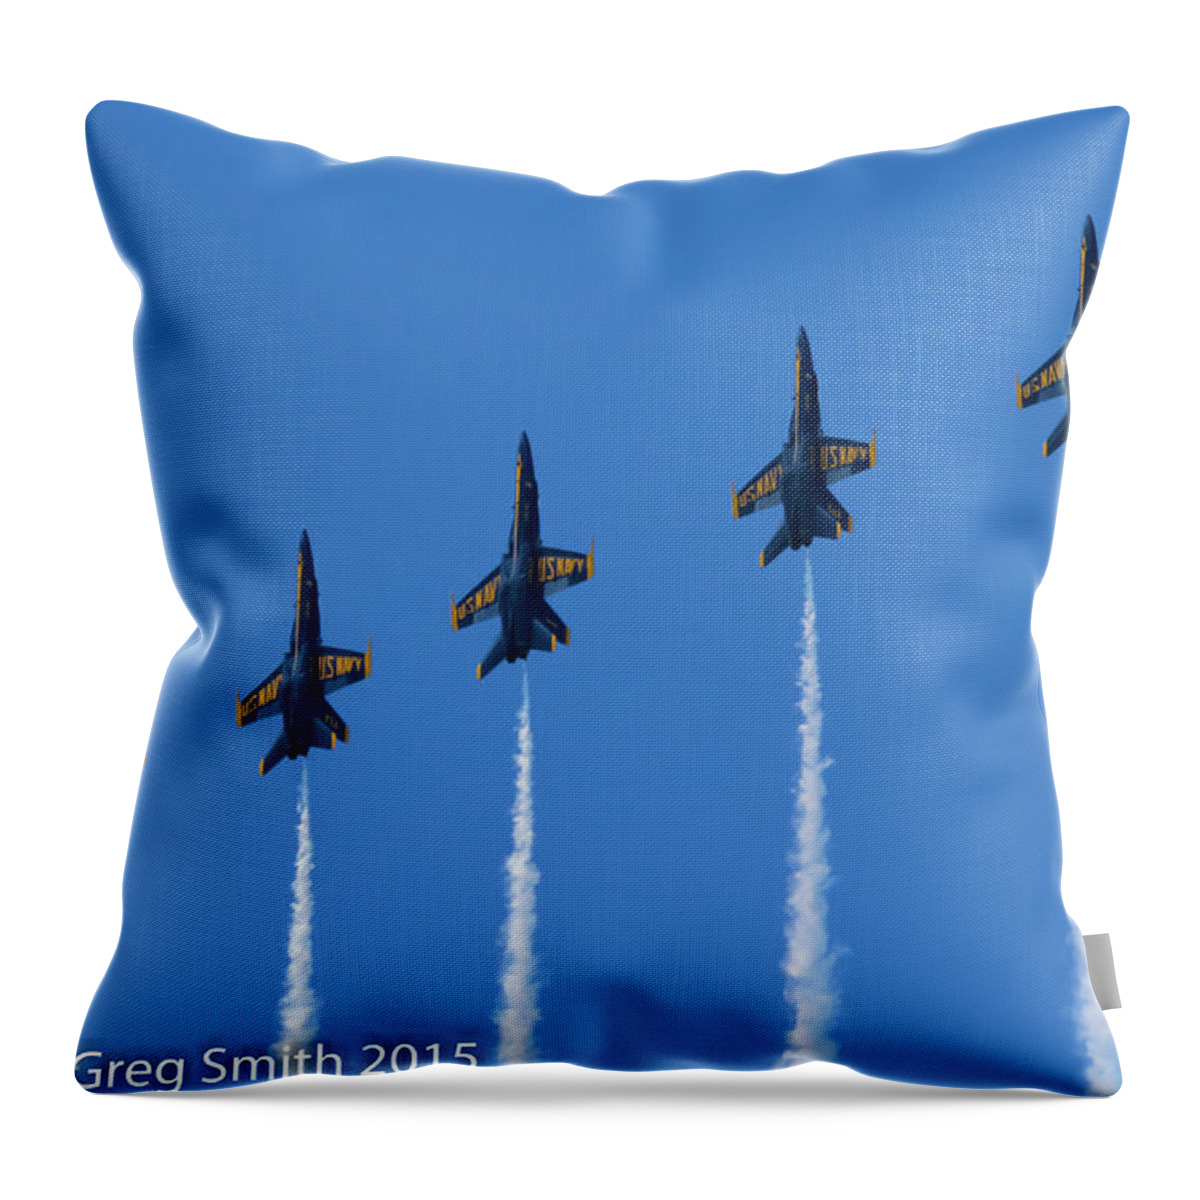 Blue Angels Nas Oceana Throw Pillow featuring the photograph Blue Angels NAS Oceana #12 by Greg Smith